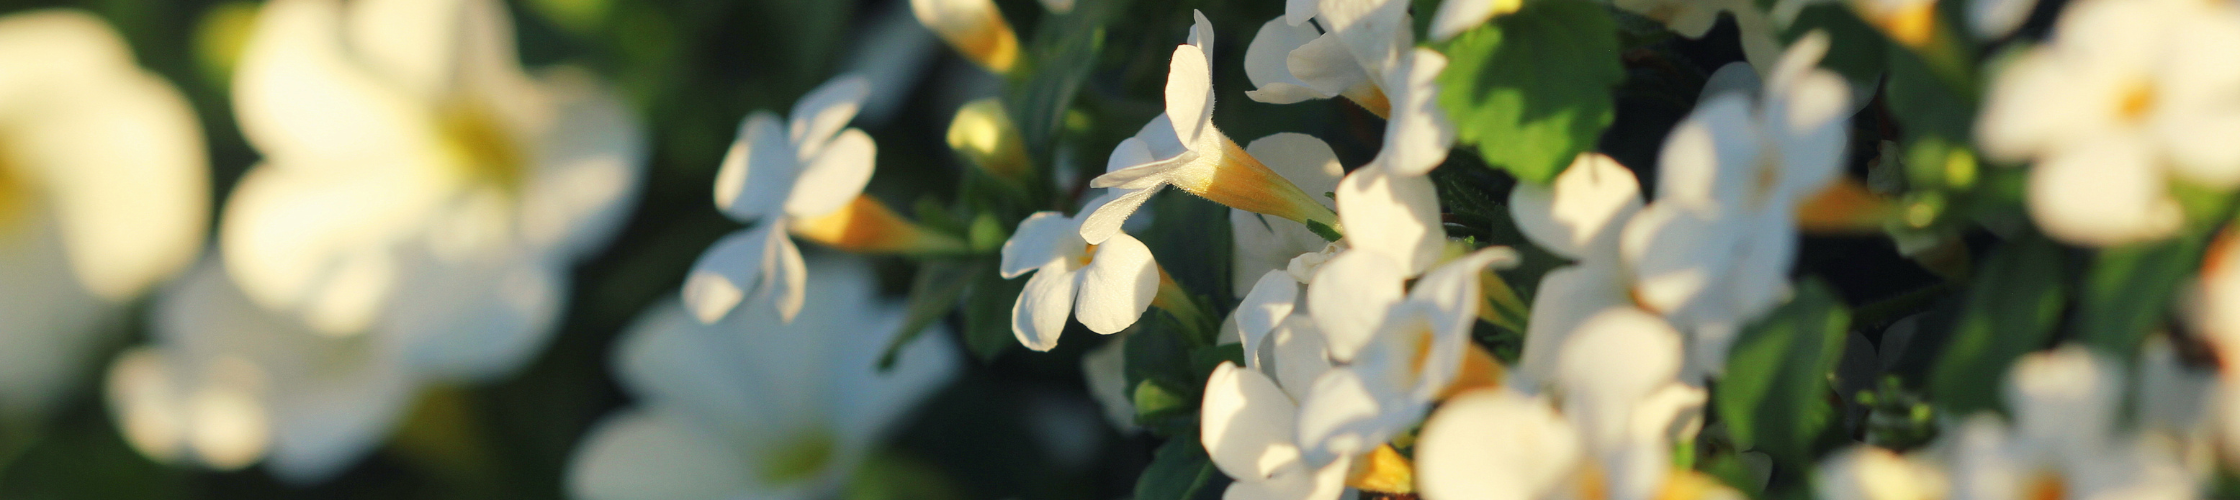 white bacopa monnieri flowers in a field